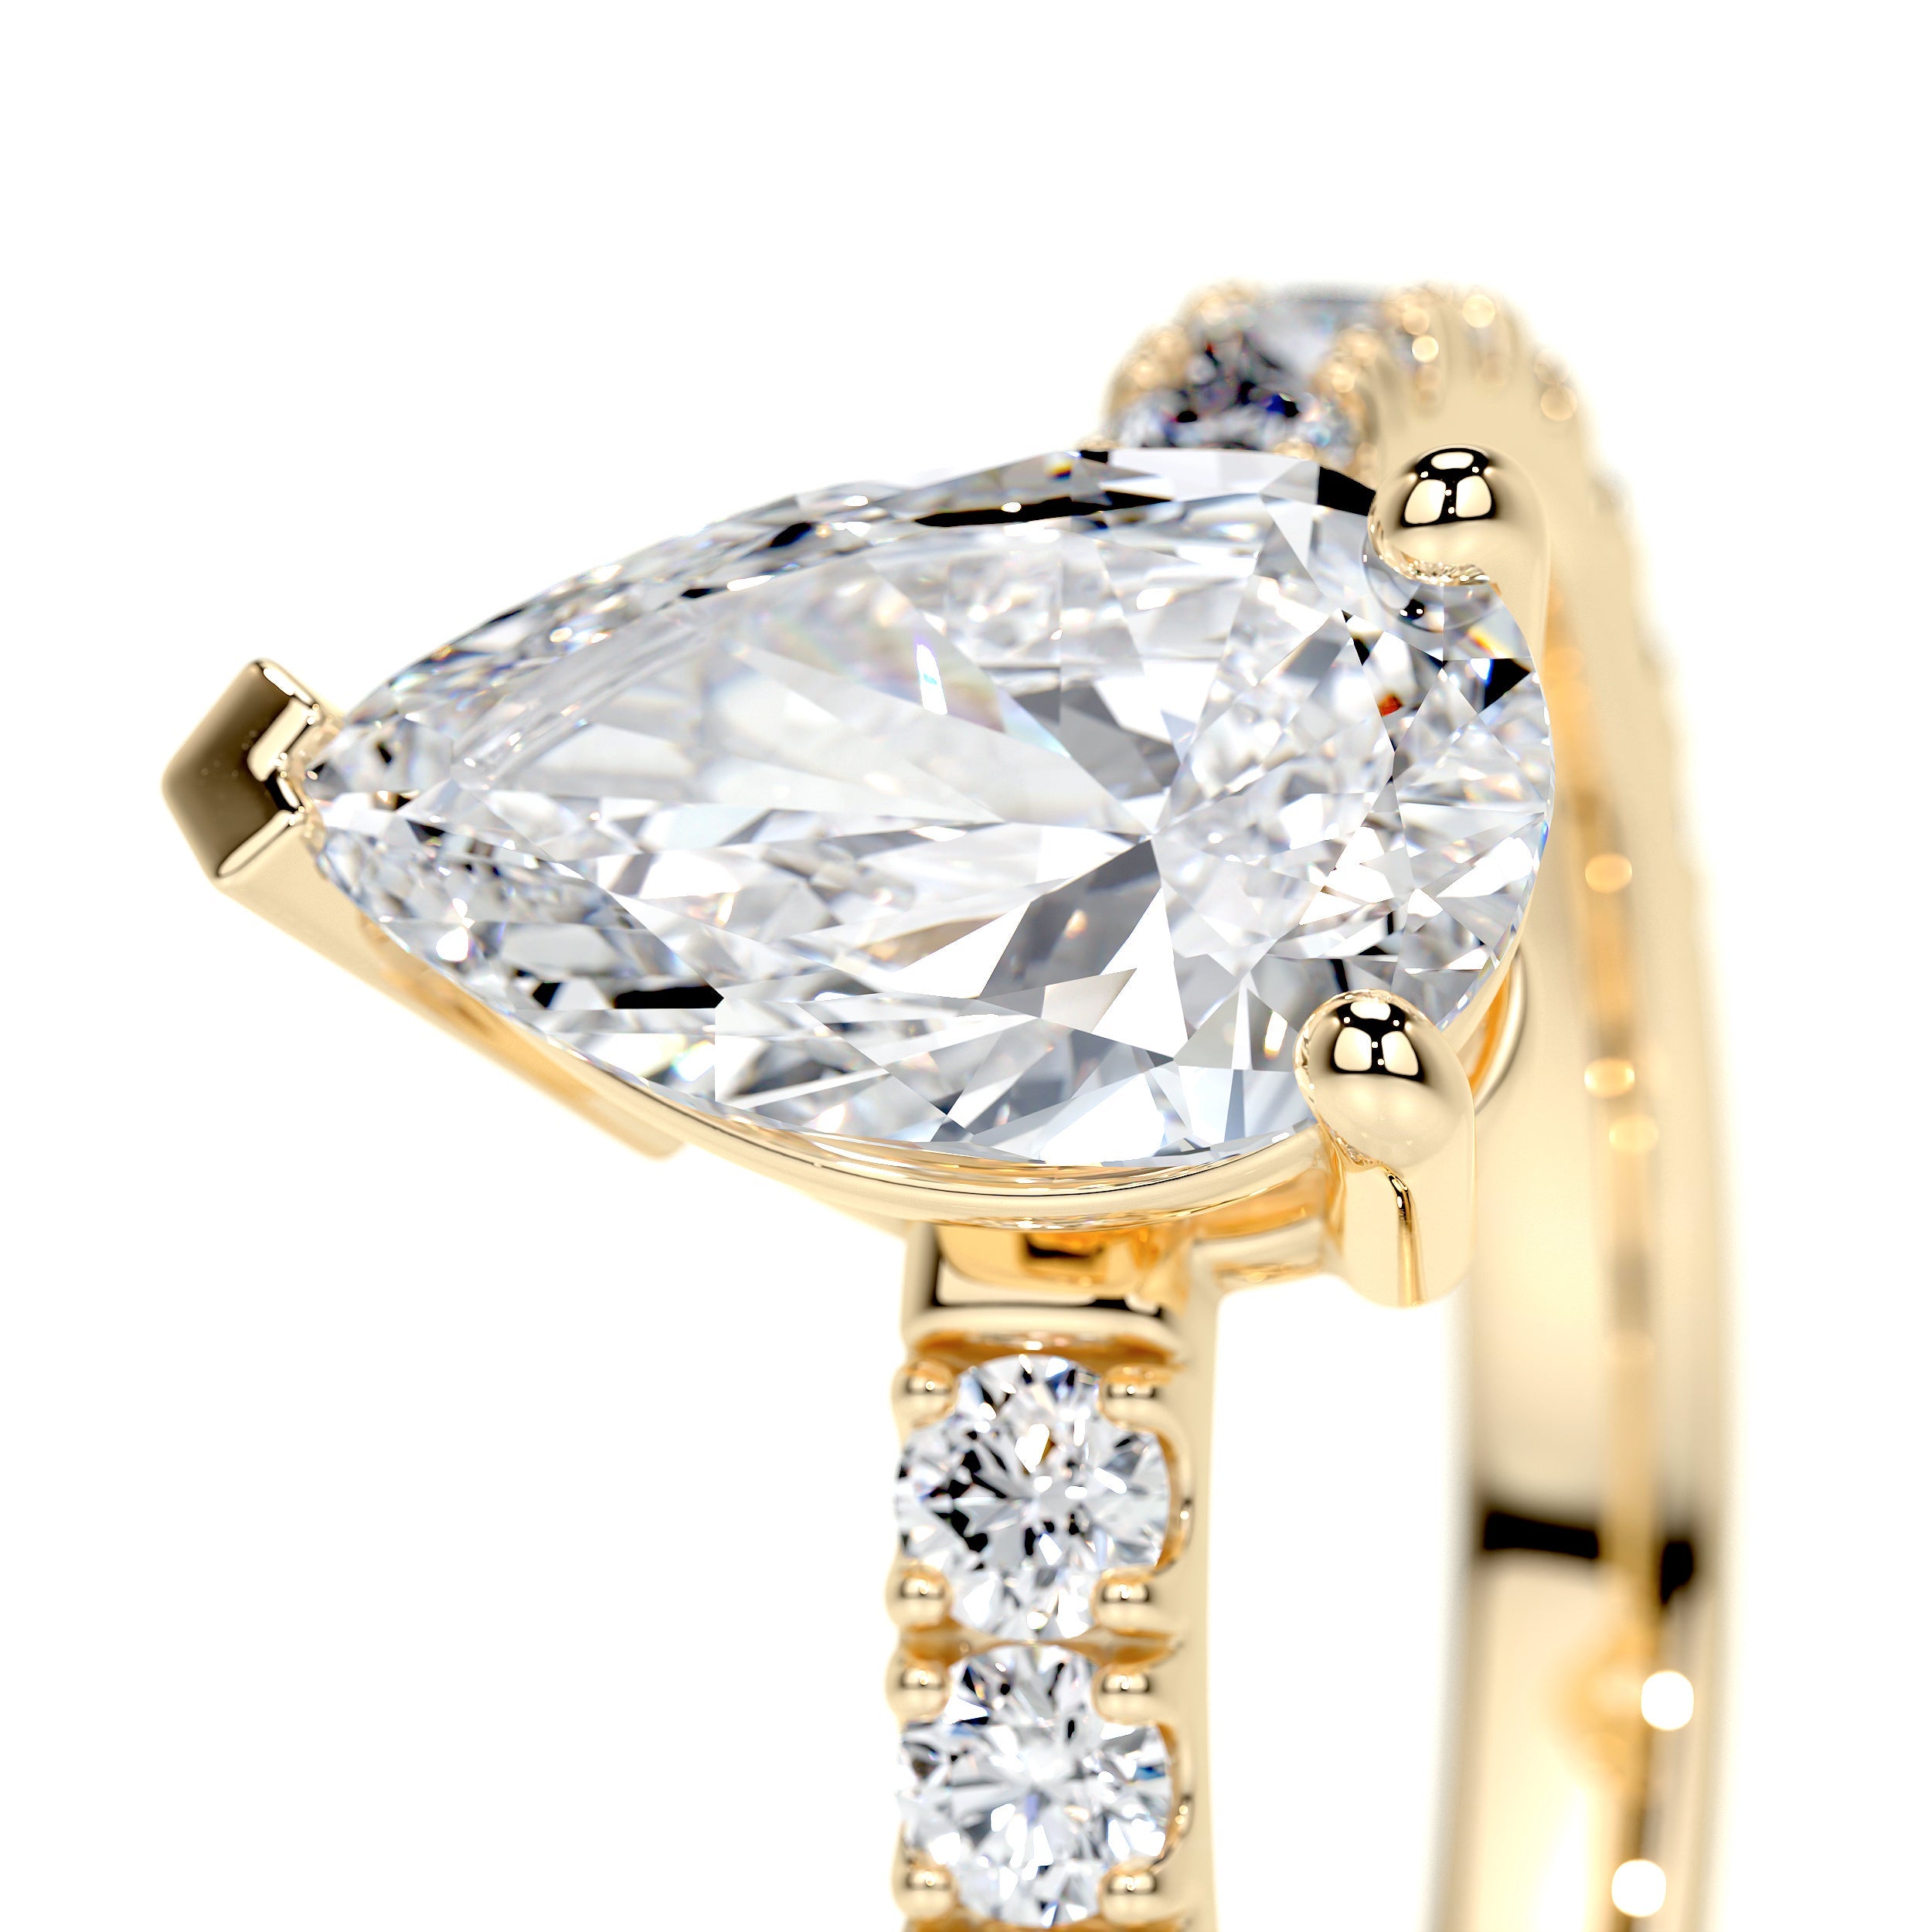 Hailey Lab Grown Diamond Ring   (2 Carat) -18K Yellow Gold